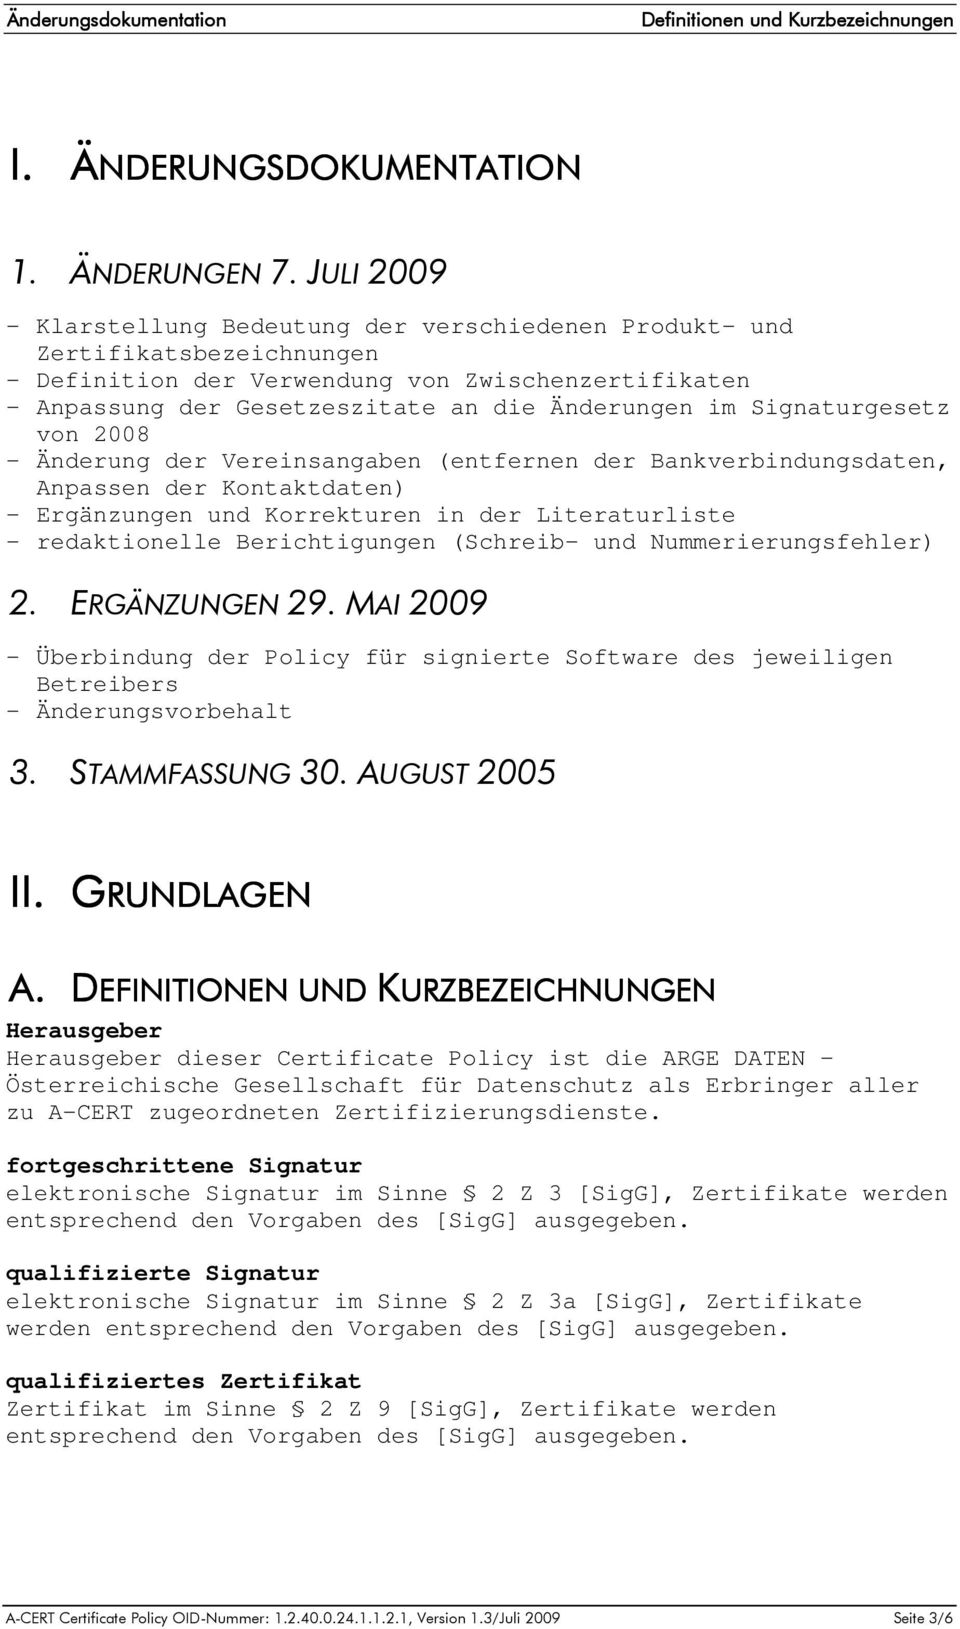 Signaturgesetz von 2008 - Änderung der Vereinsangaben (entfernen der Bankverbindungsdaten, Anpassen der Kontaktdaten) - Ergänzungen und Korrekturen in der Literaturliste - redaktionelle